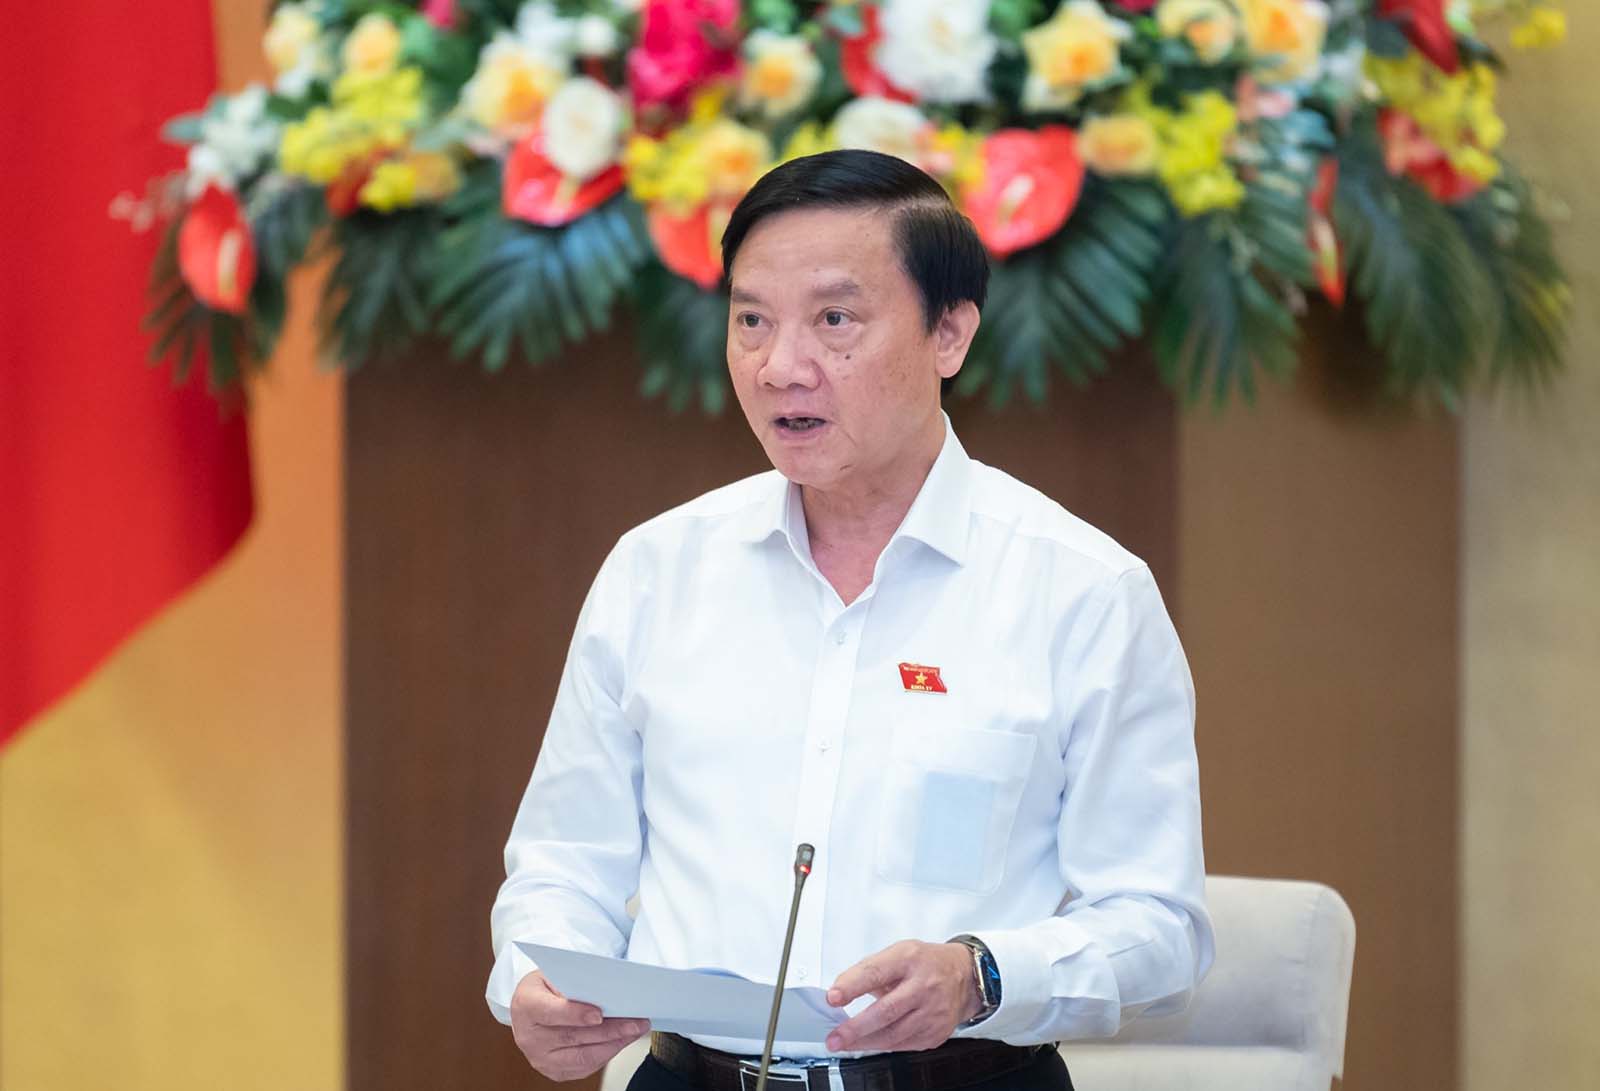 Phó Chủ tịch Quốc hội Nguyễn Khắc Định phát biểu tại phiên họp. Ảnh: Phạm Thắng/QH